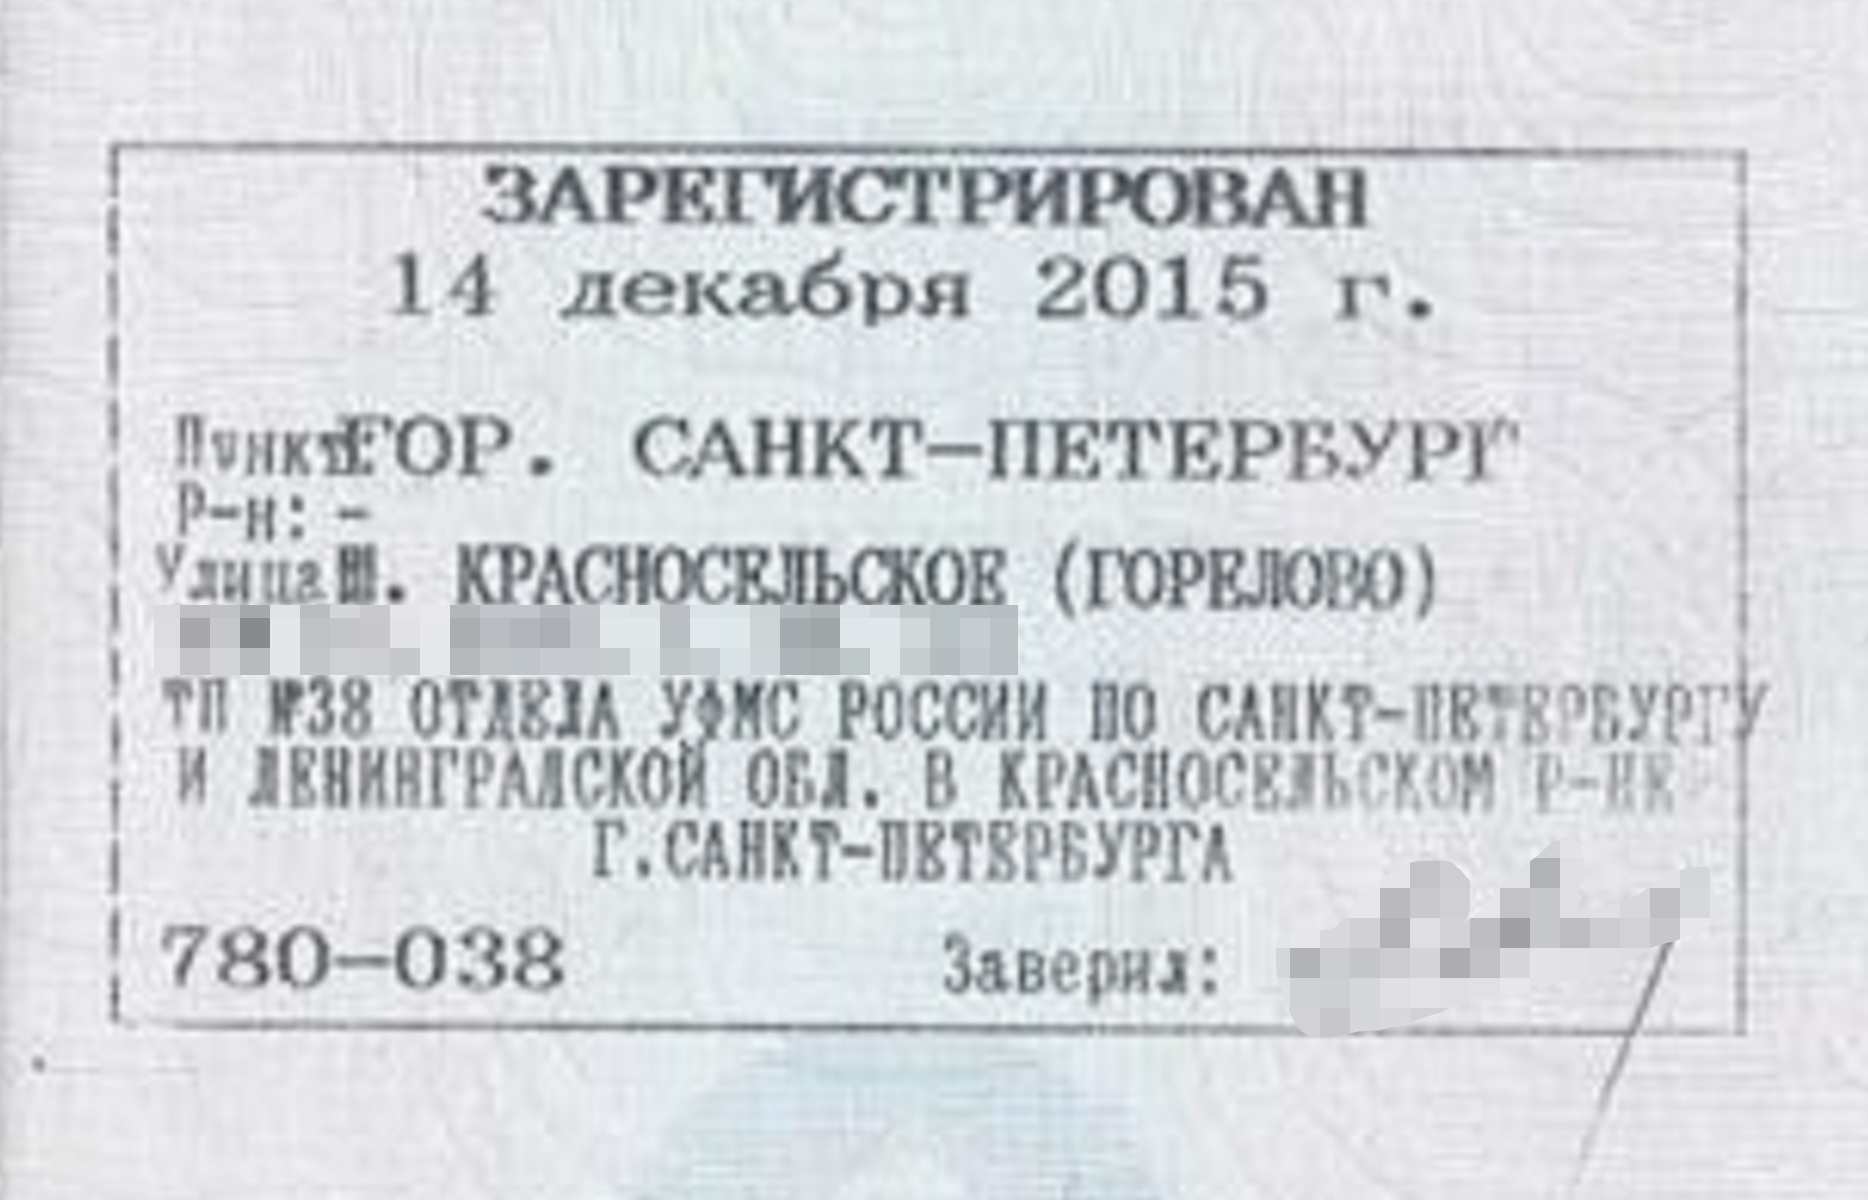 А в паспорте стоит та же улица, но регистрация уже в Санкт⁠-⁠Петербурге